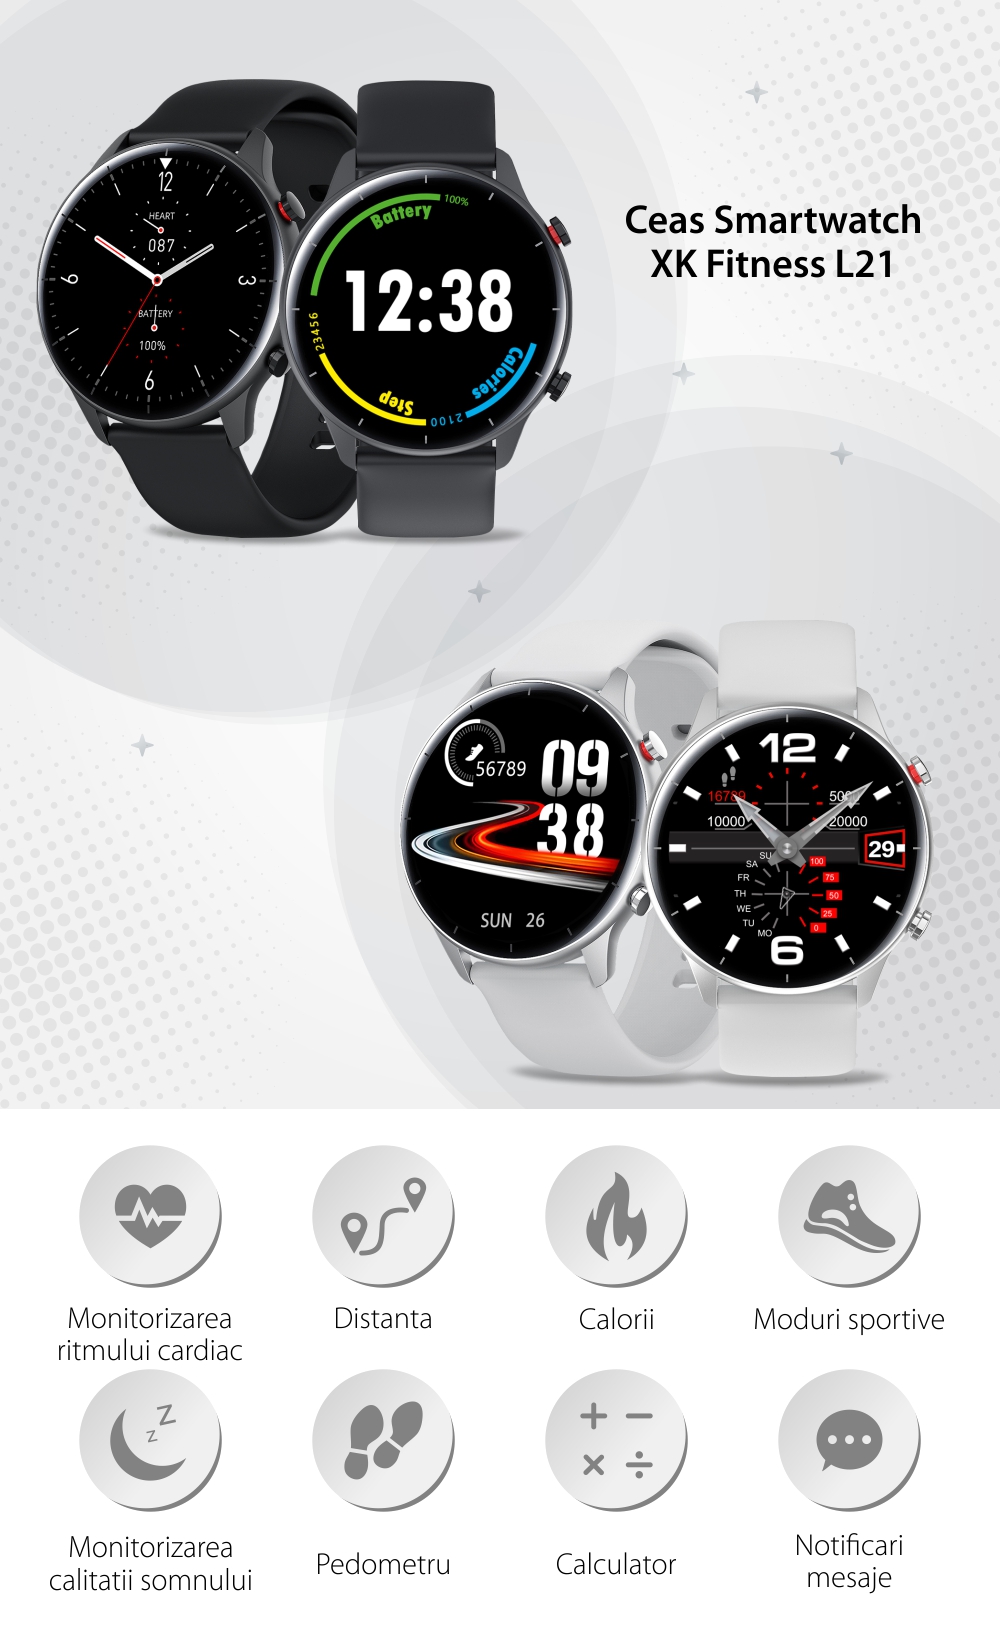 Ceas Smartwatch XK Fitness L21 cu Functie apelare, Notificari, Moduri sport, Negru